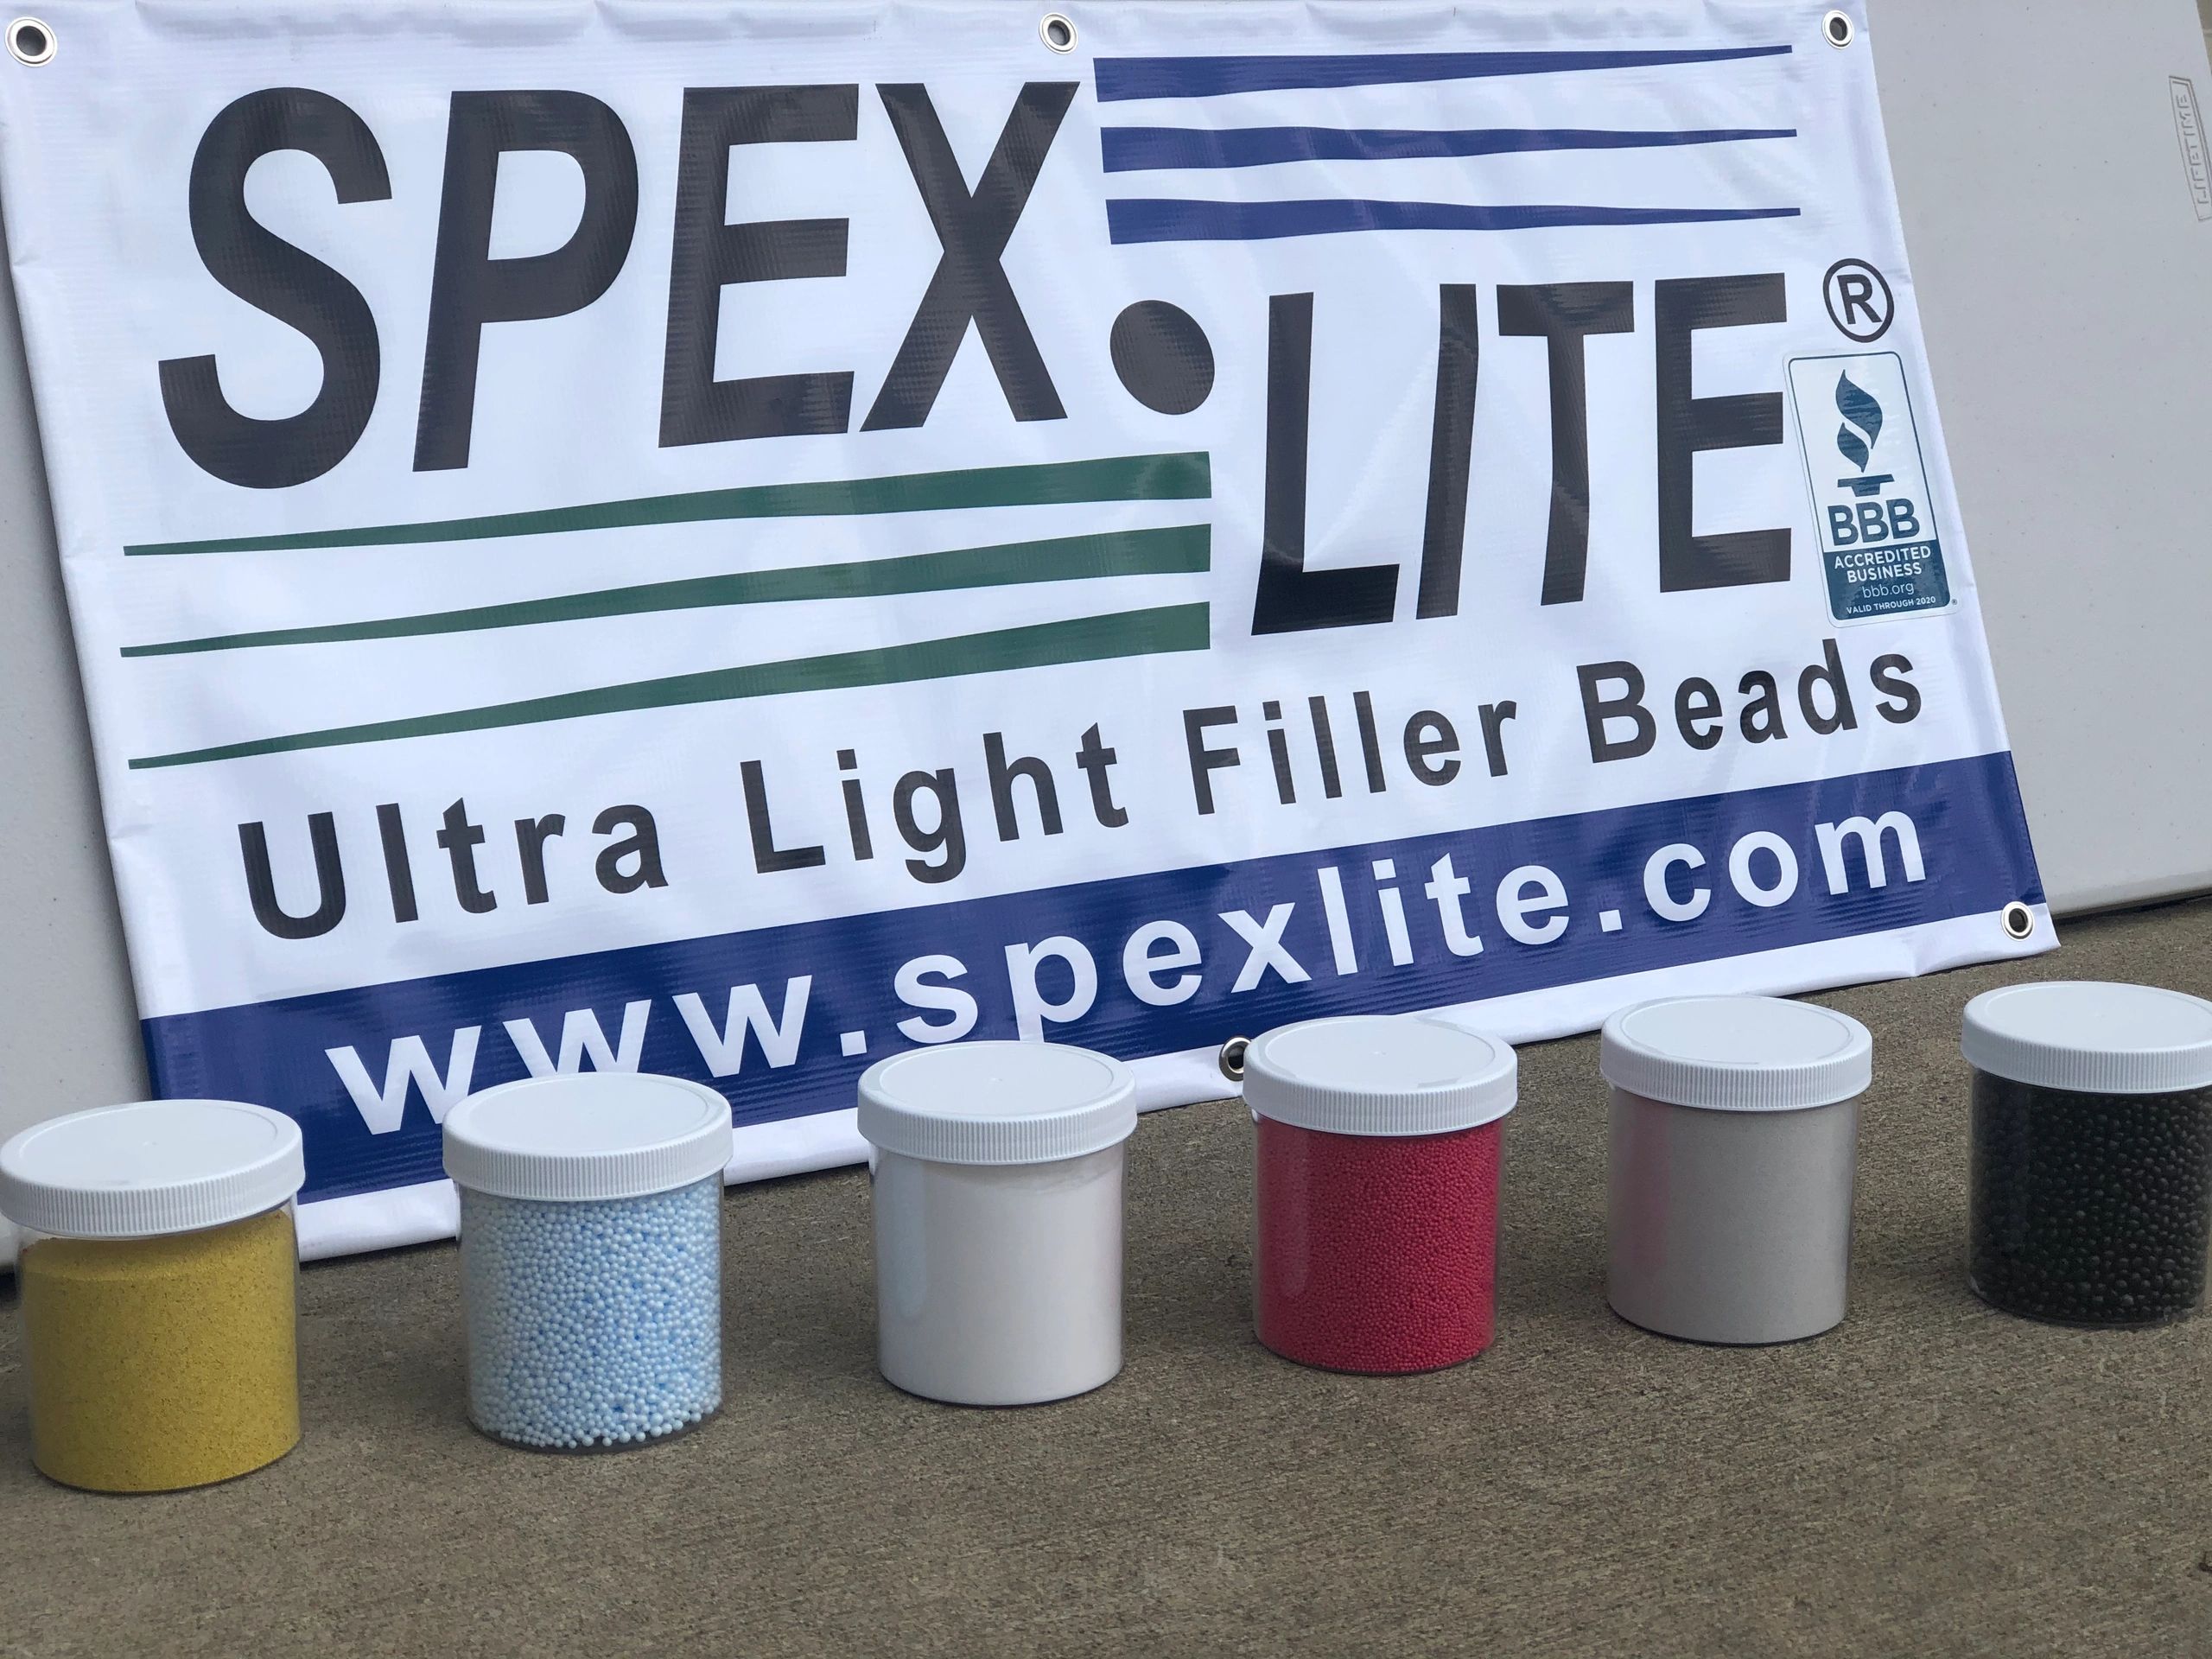 SpexLite Ultra Light Filler Beads